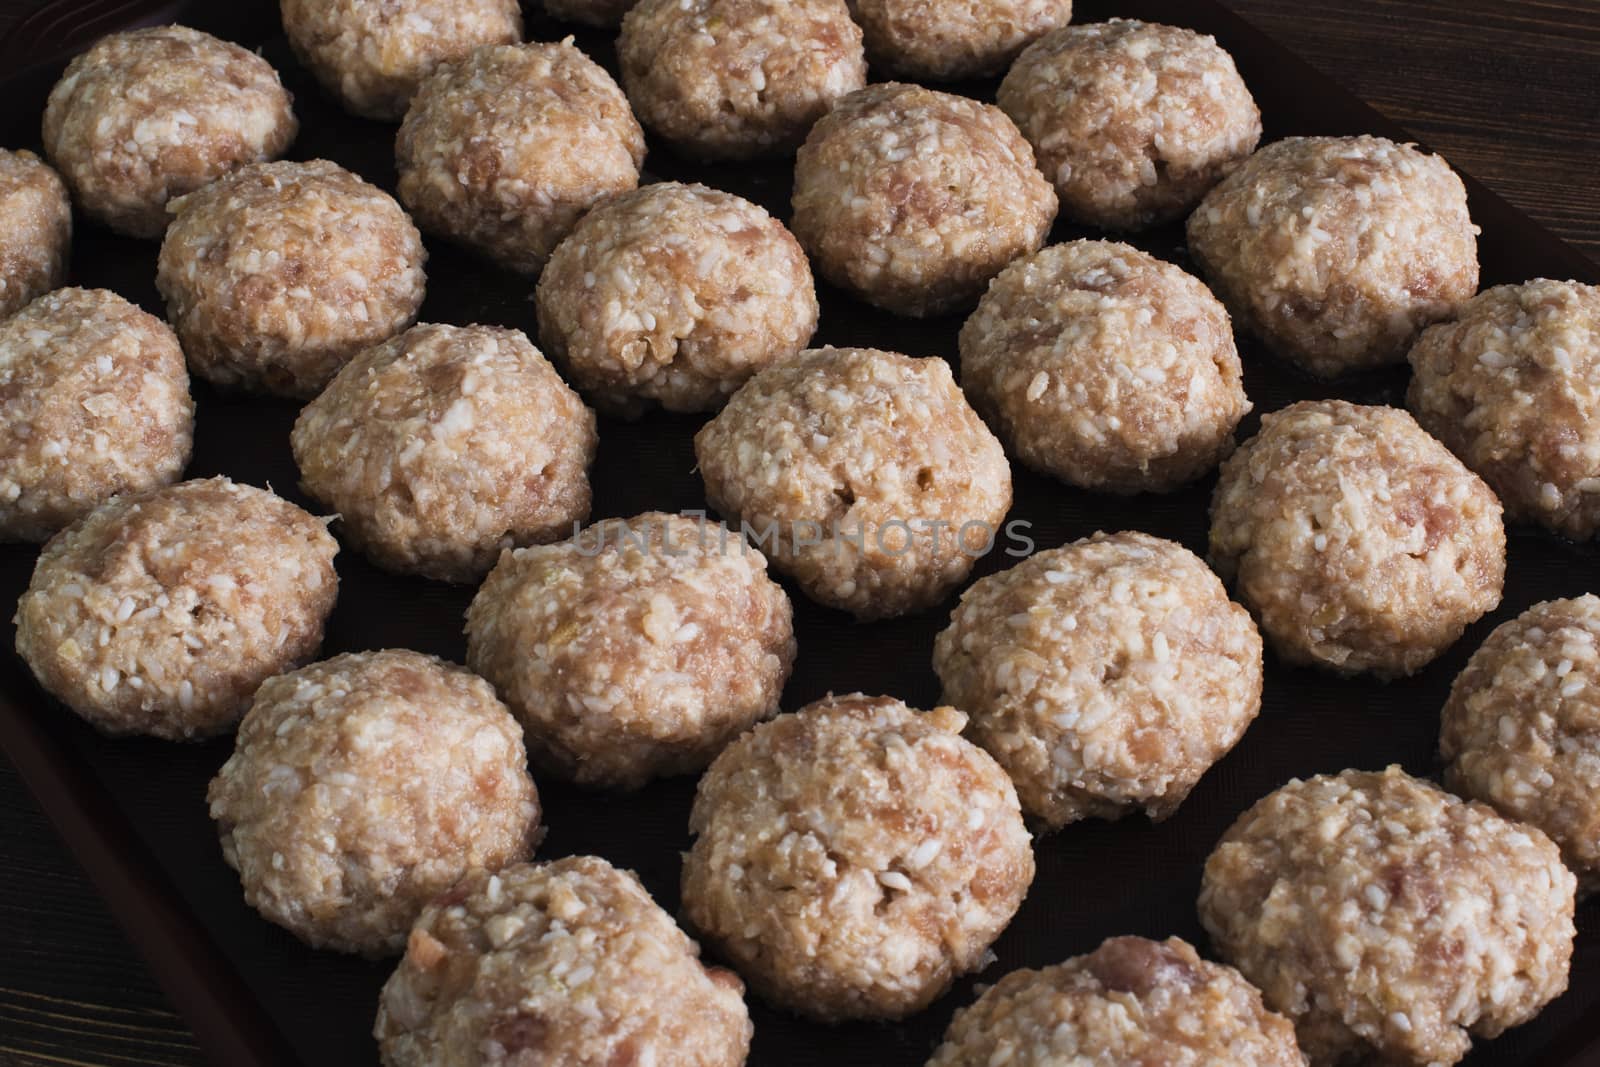 Lots uncooked meatballs on dark tray by kzen